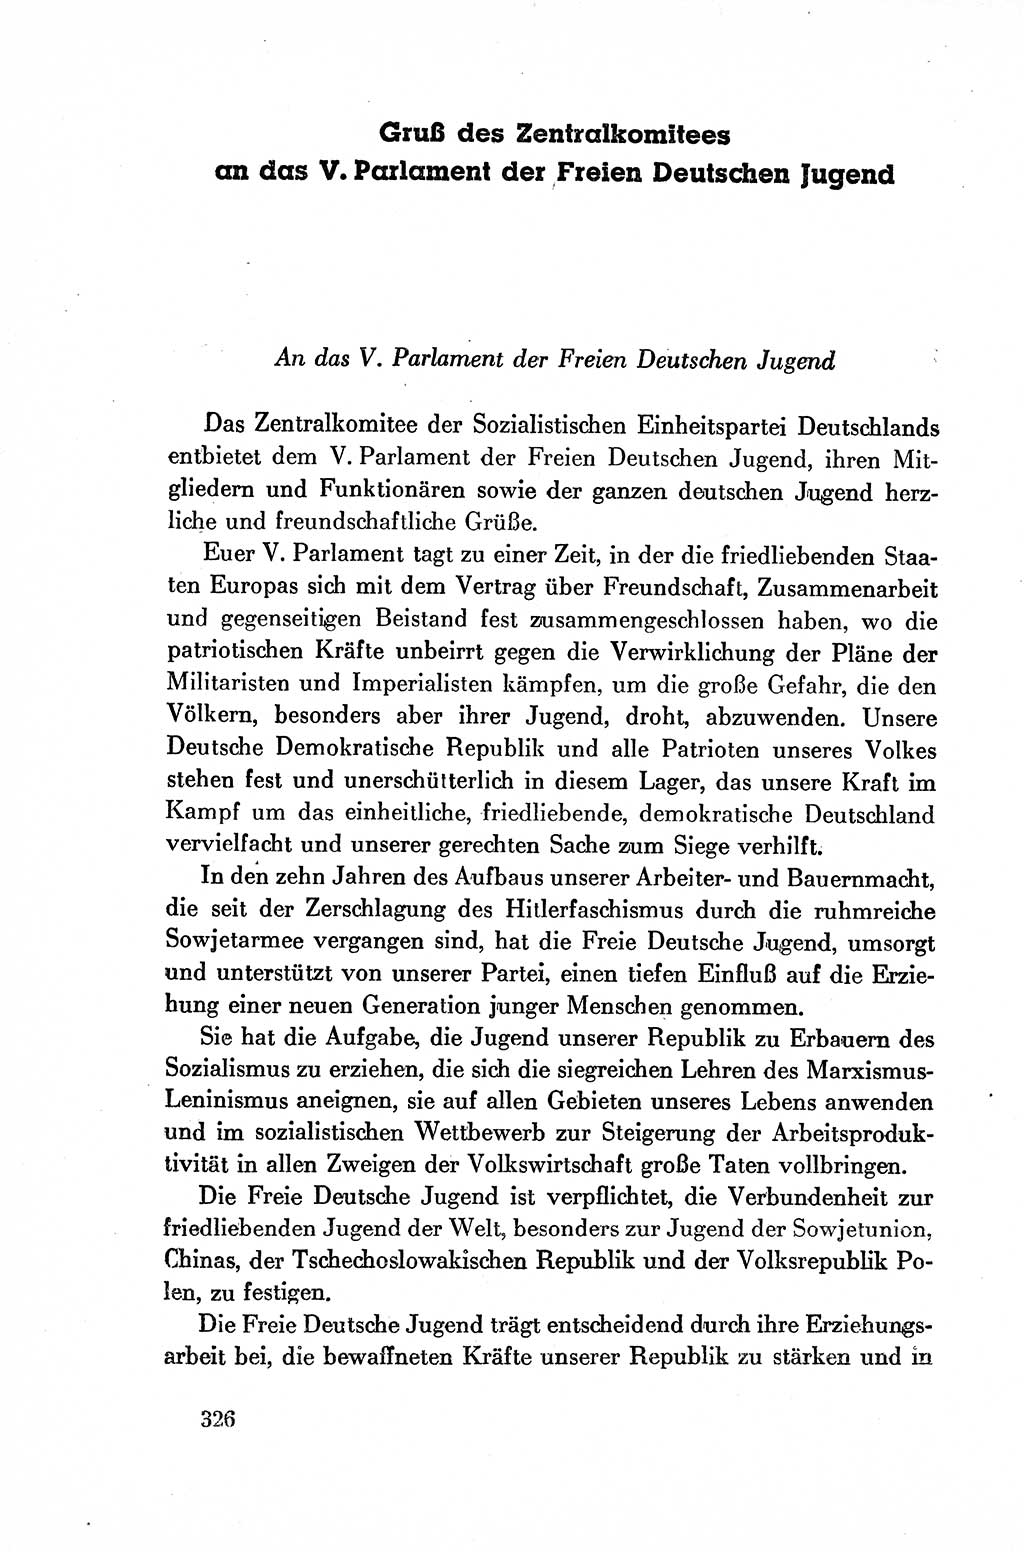 Dokumente der Sozialistischen Einheitspartei Deutschlands (SED) [Deutsche Demokratische Republik (DDR)] 1954-1955, Seite 326 (Dok. SED DDR 1954-1955, S. 326)